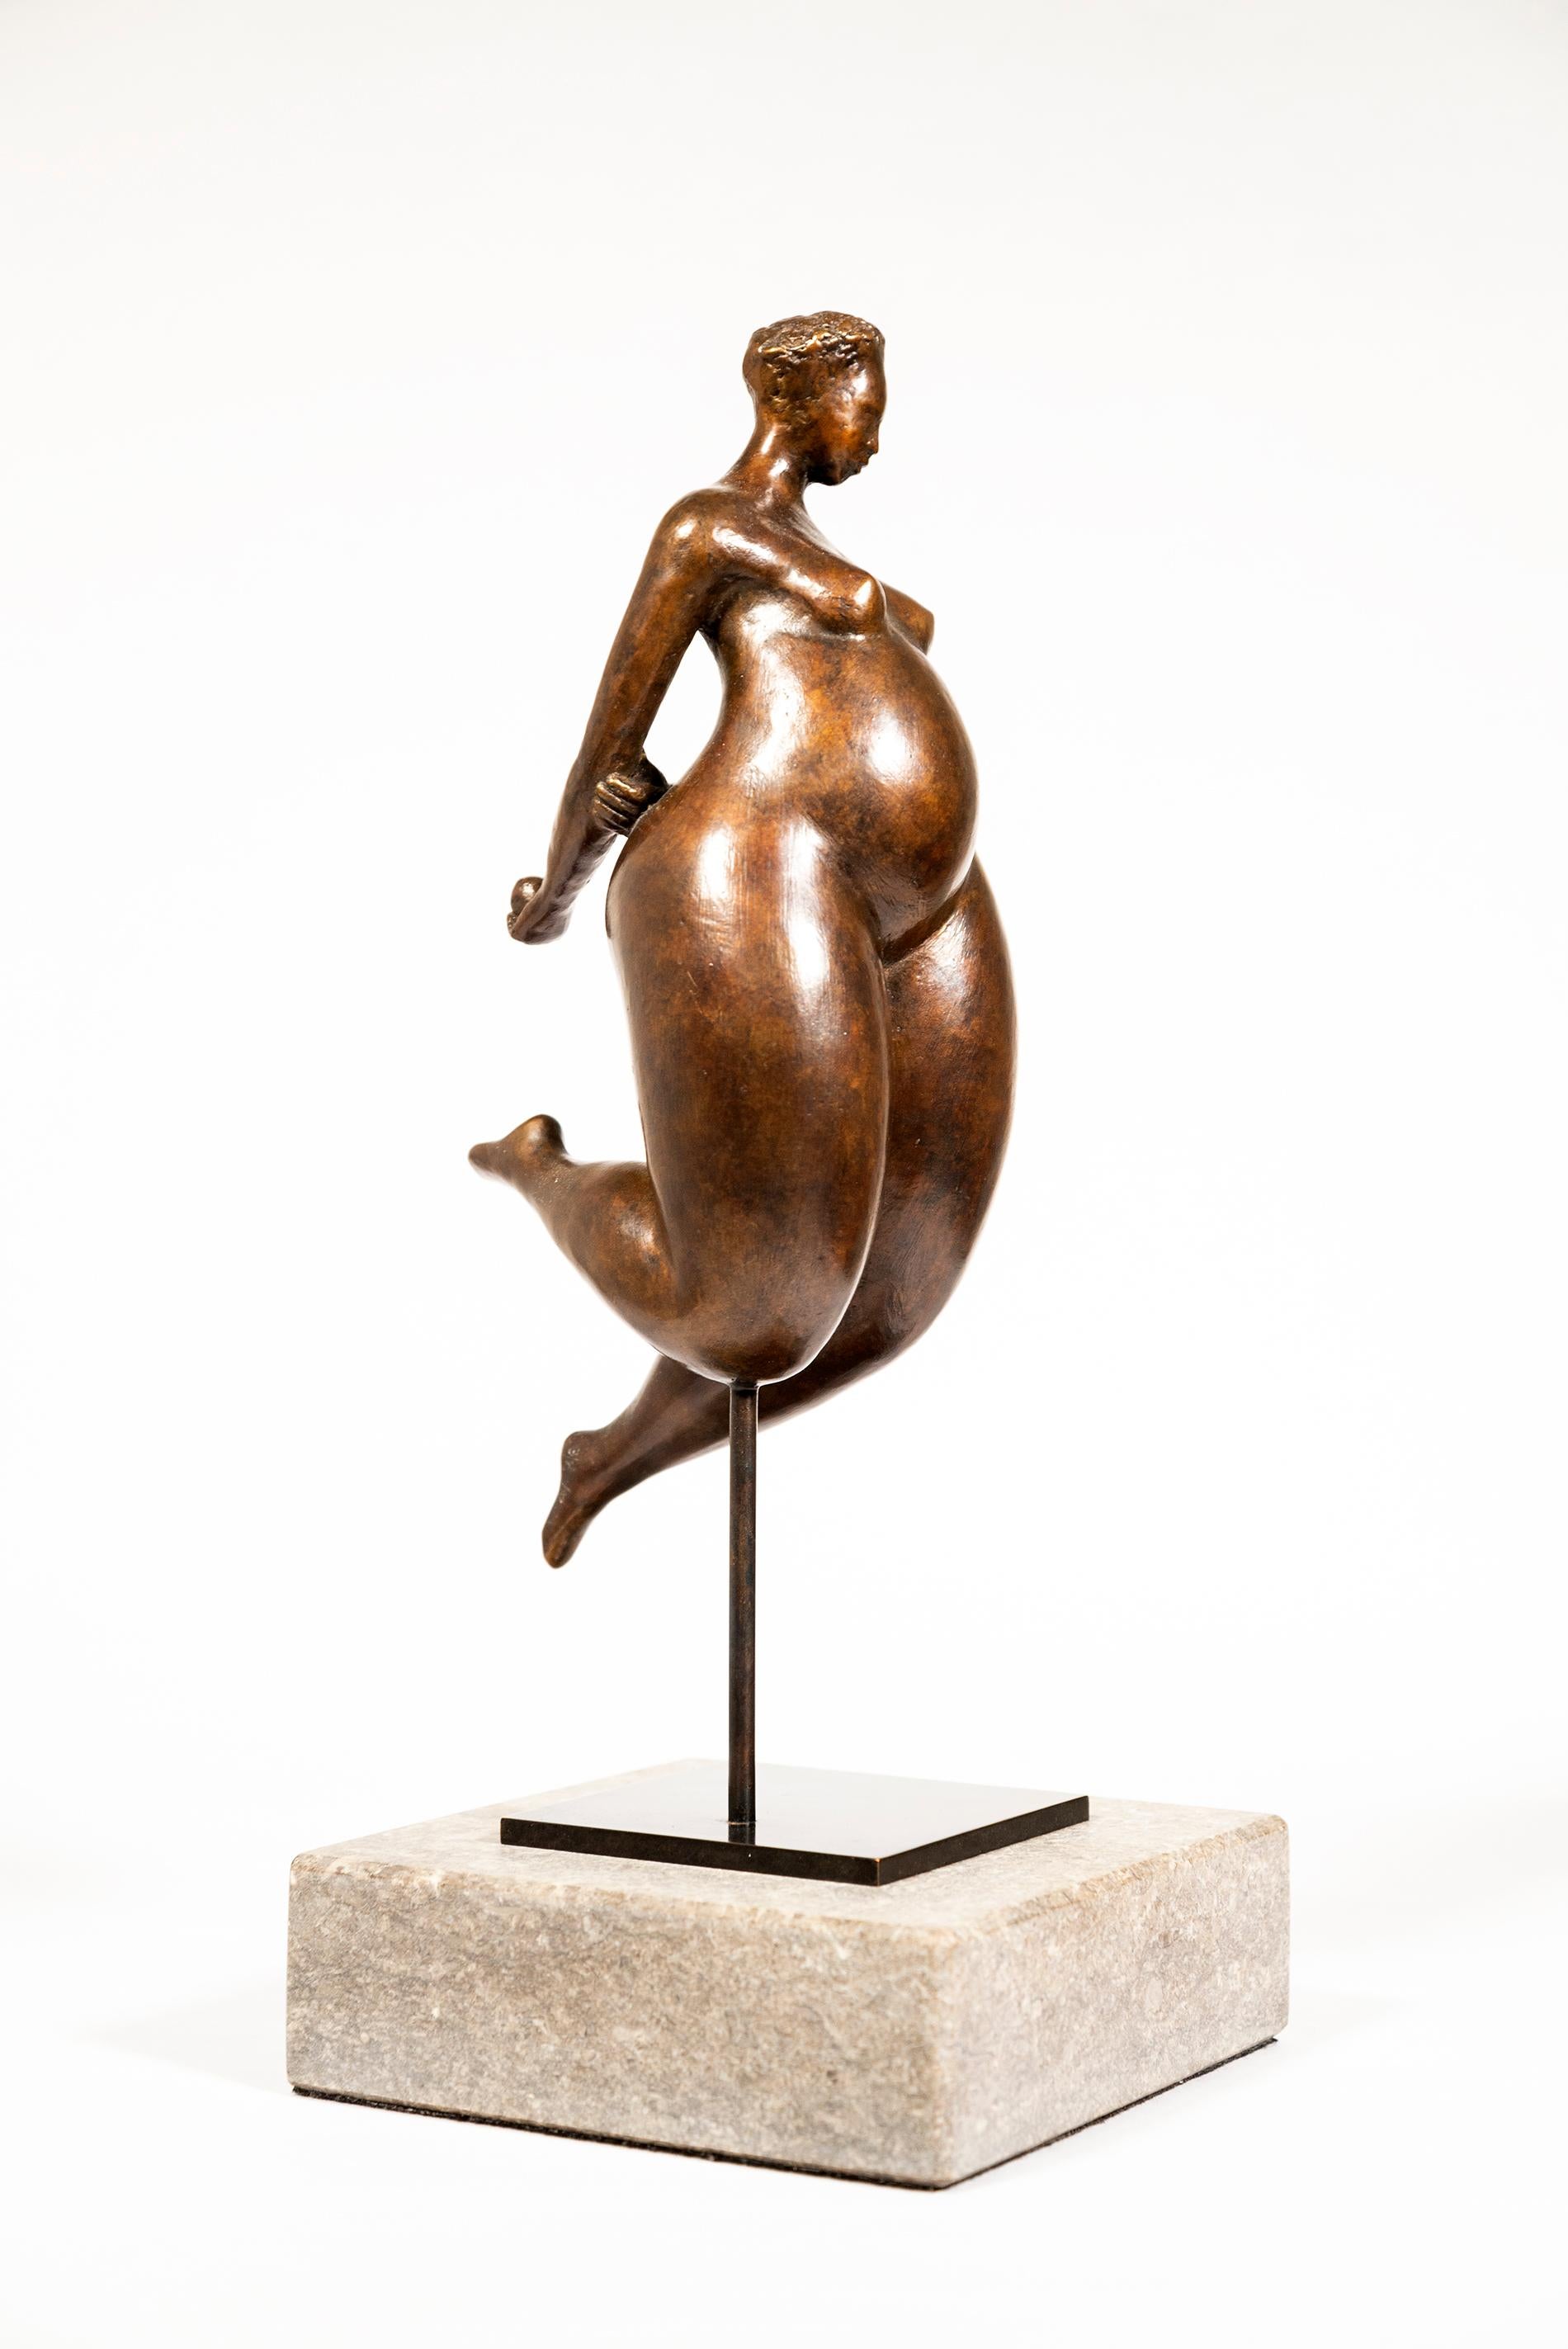 Zaliatou 3/8 - female, figurative, nude, expressive, modern, bronze sculpture - Contemporary Sculpture by Paul Duval